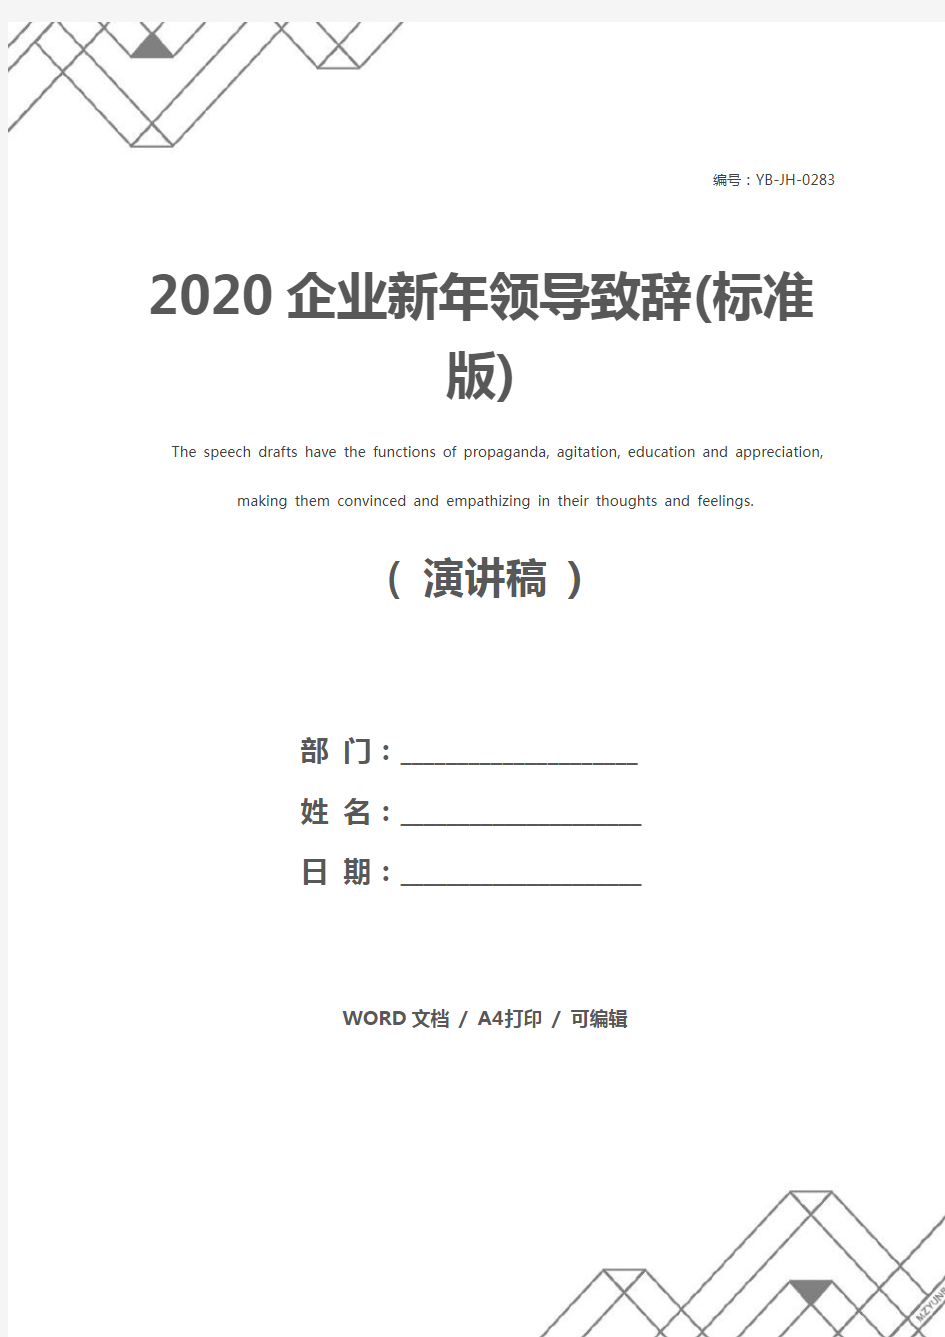 2020企业新年领导致辞(标准版)